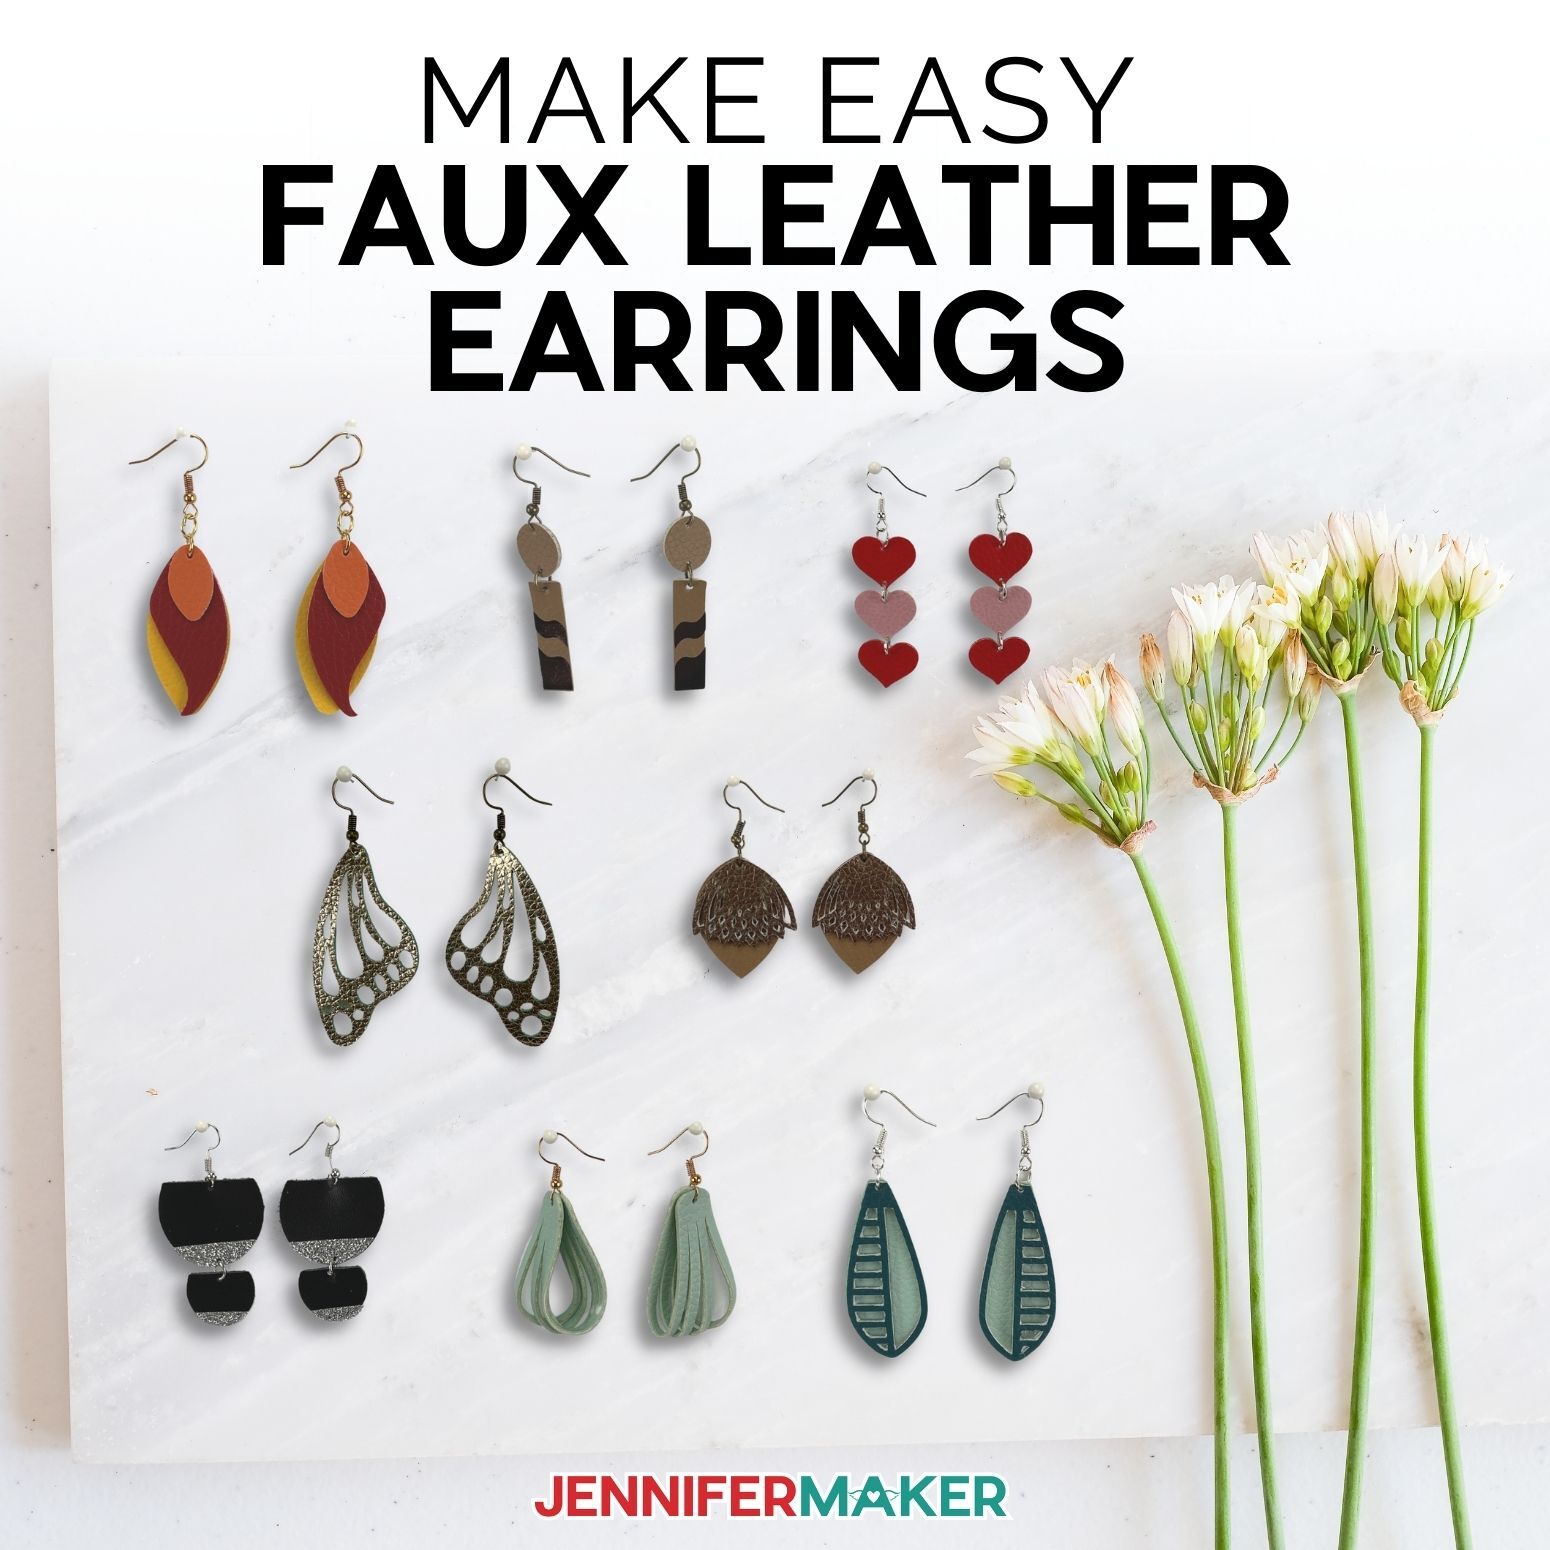 DIY Faux Leather Earrings: 8 Free Fun Styles - Jennifer Maker